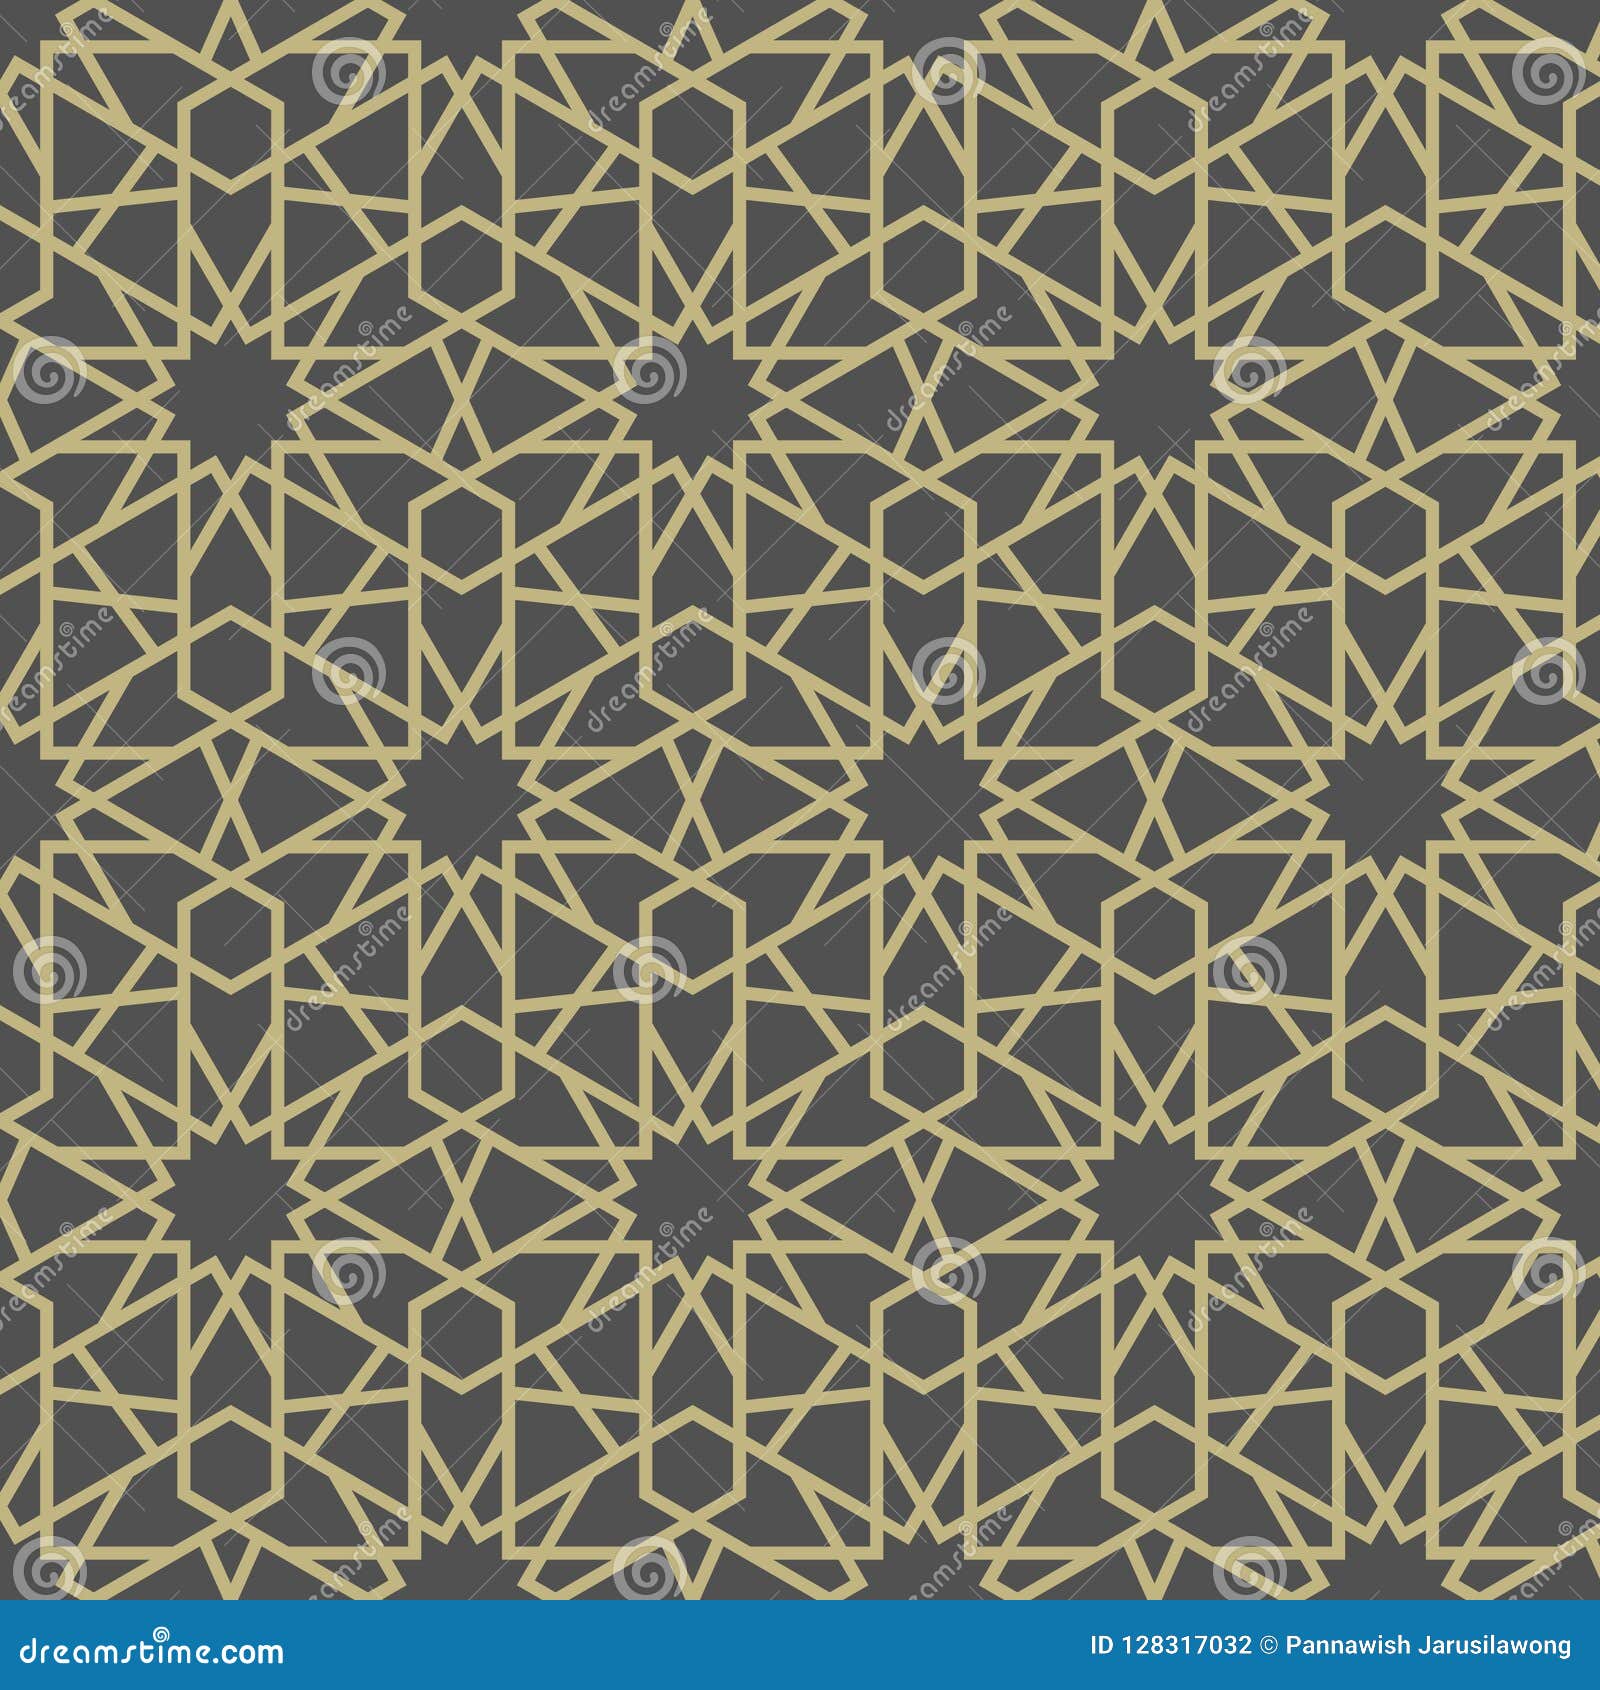 arabesque star pattern